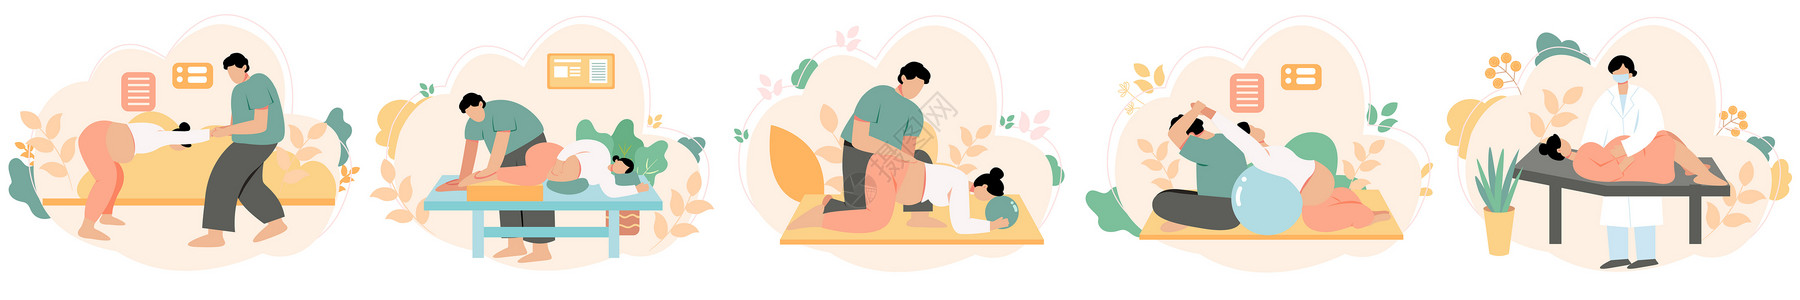 儿童锻炼孕妇产前护理训练孕期锻炼svg矢量插画元素插画